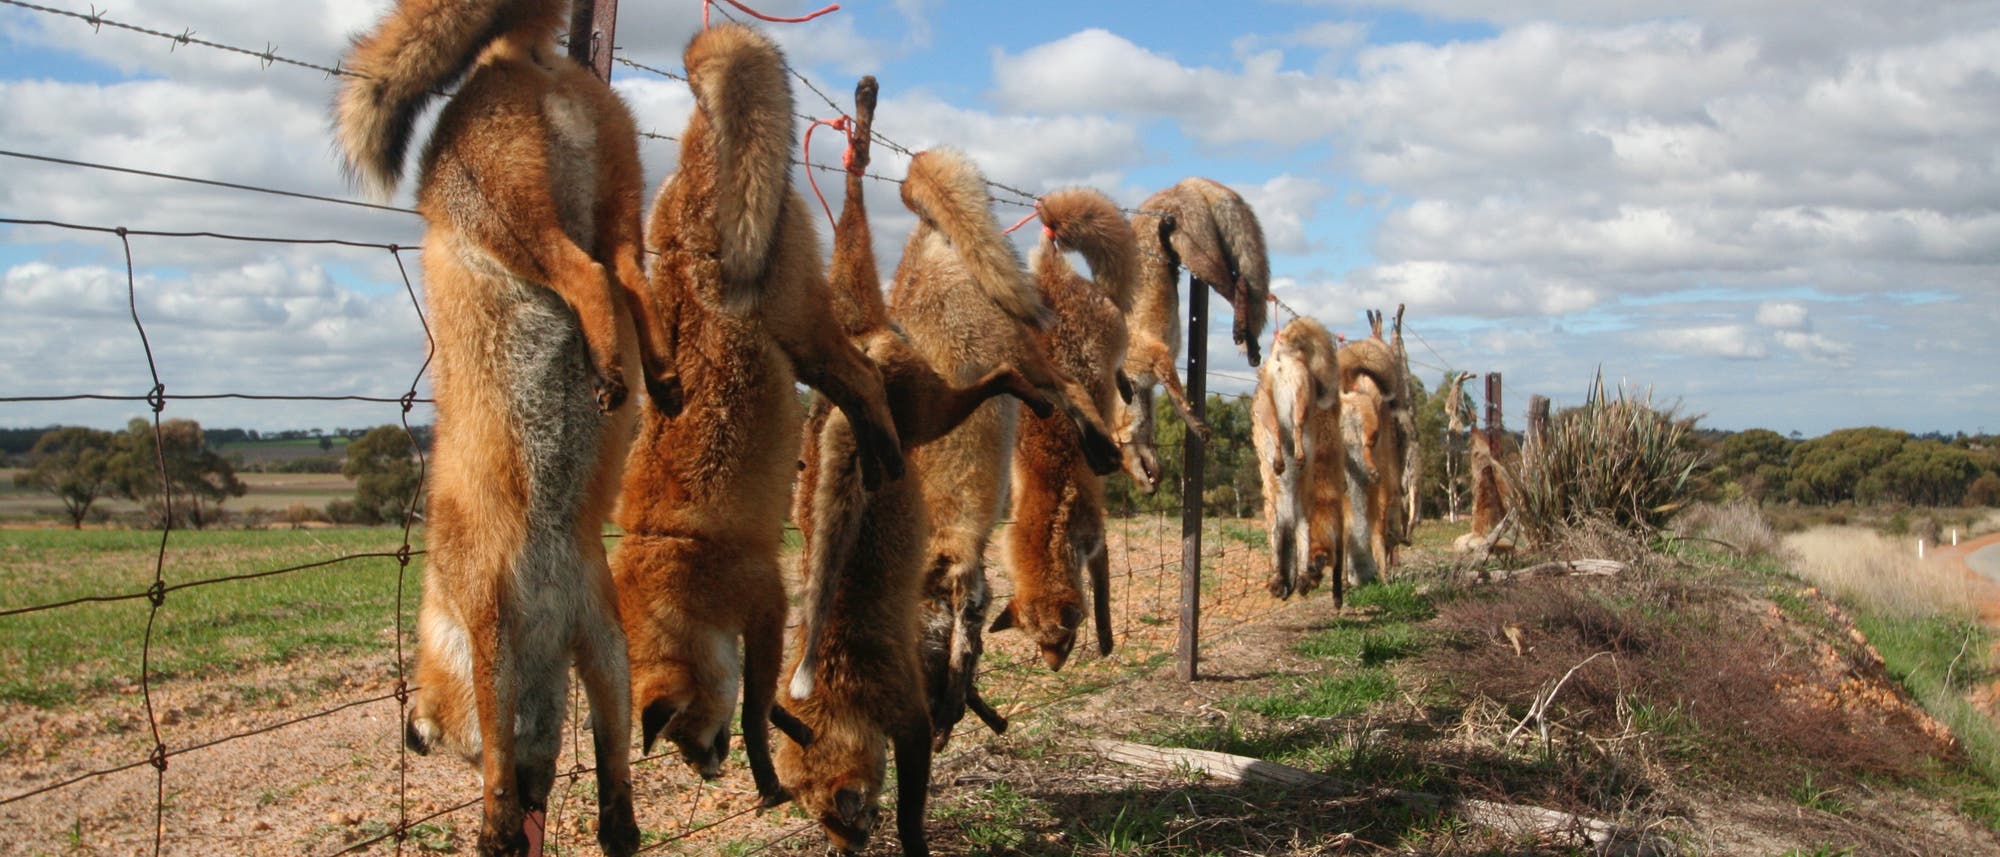 Erlegte Füchse auf einem Zaun im australischen Outback